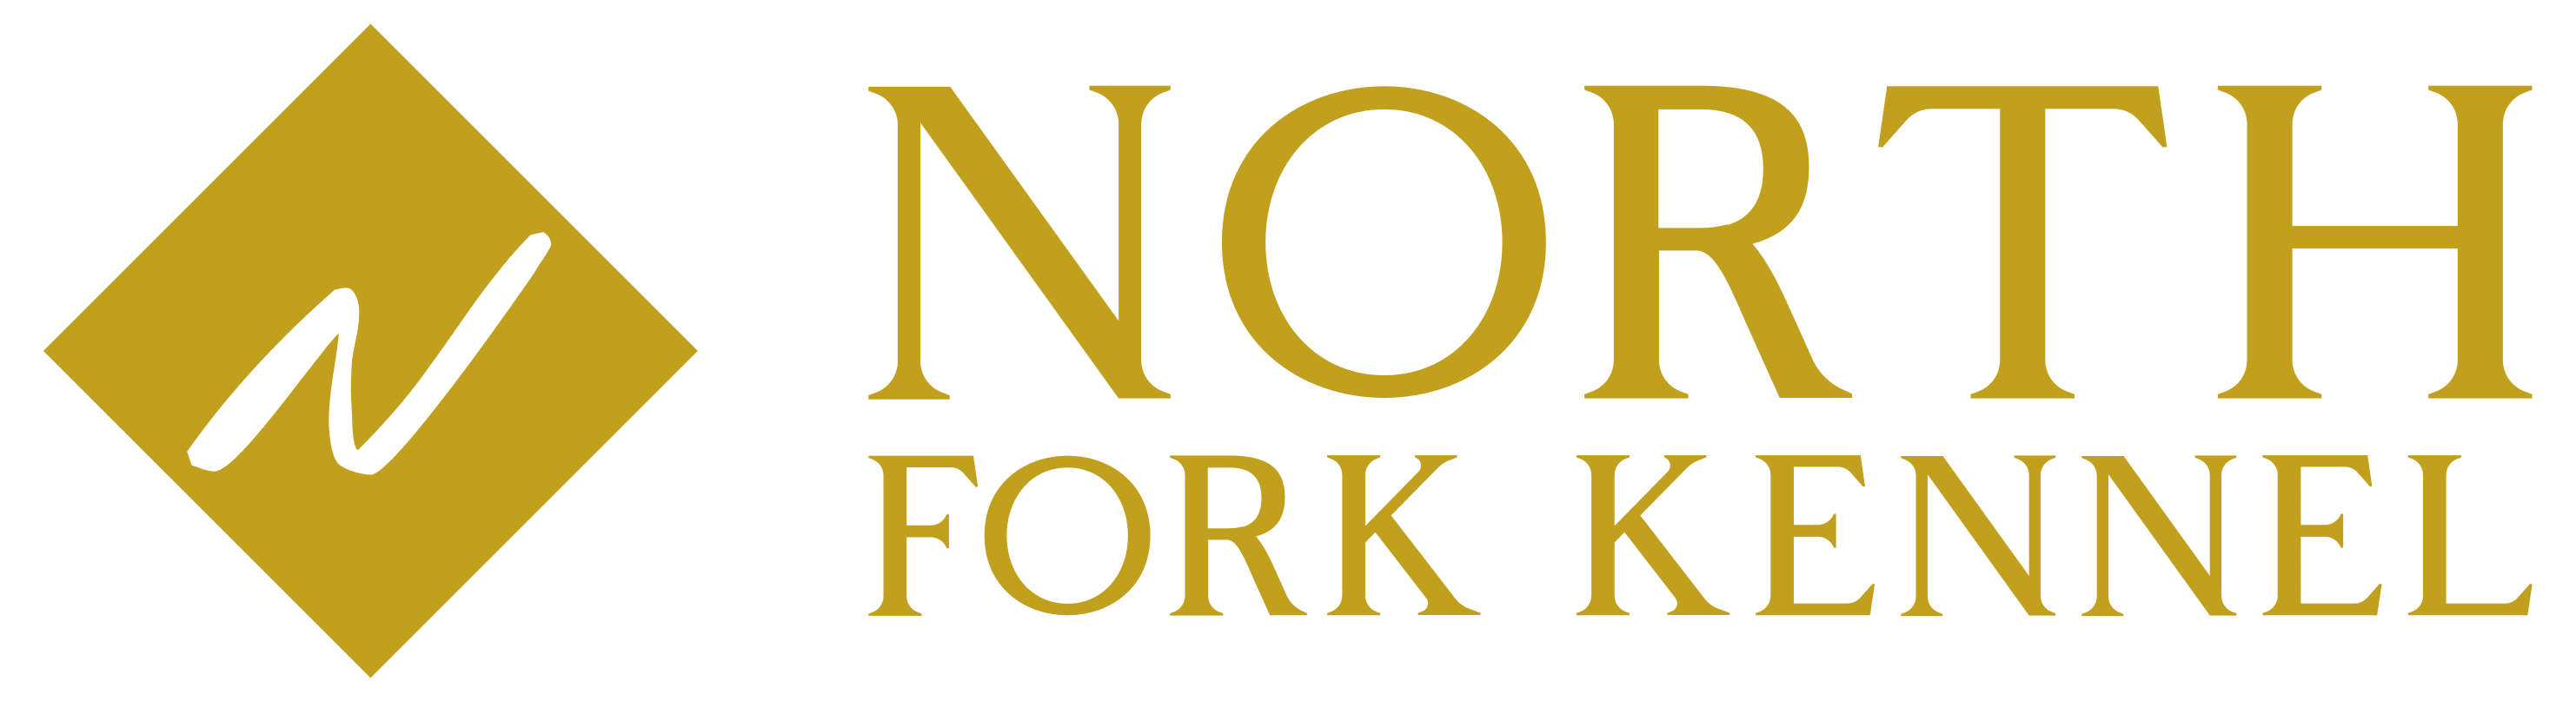 North Fork Kennel Logo